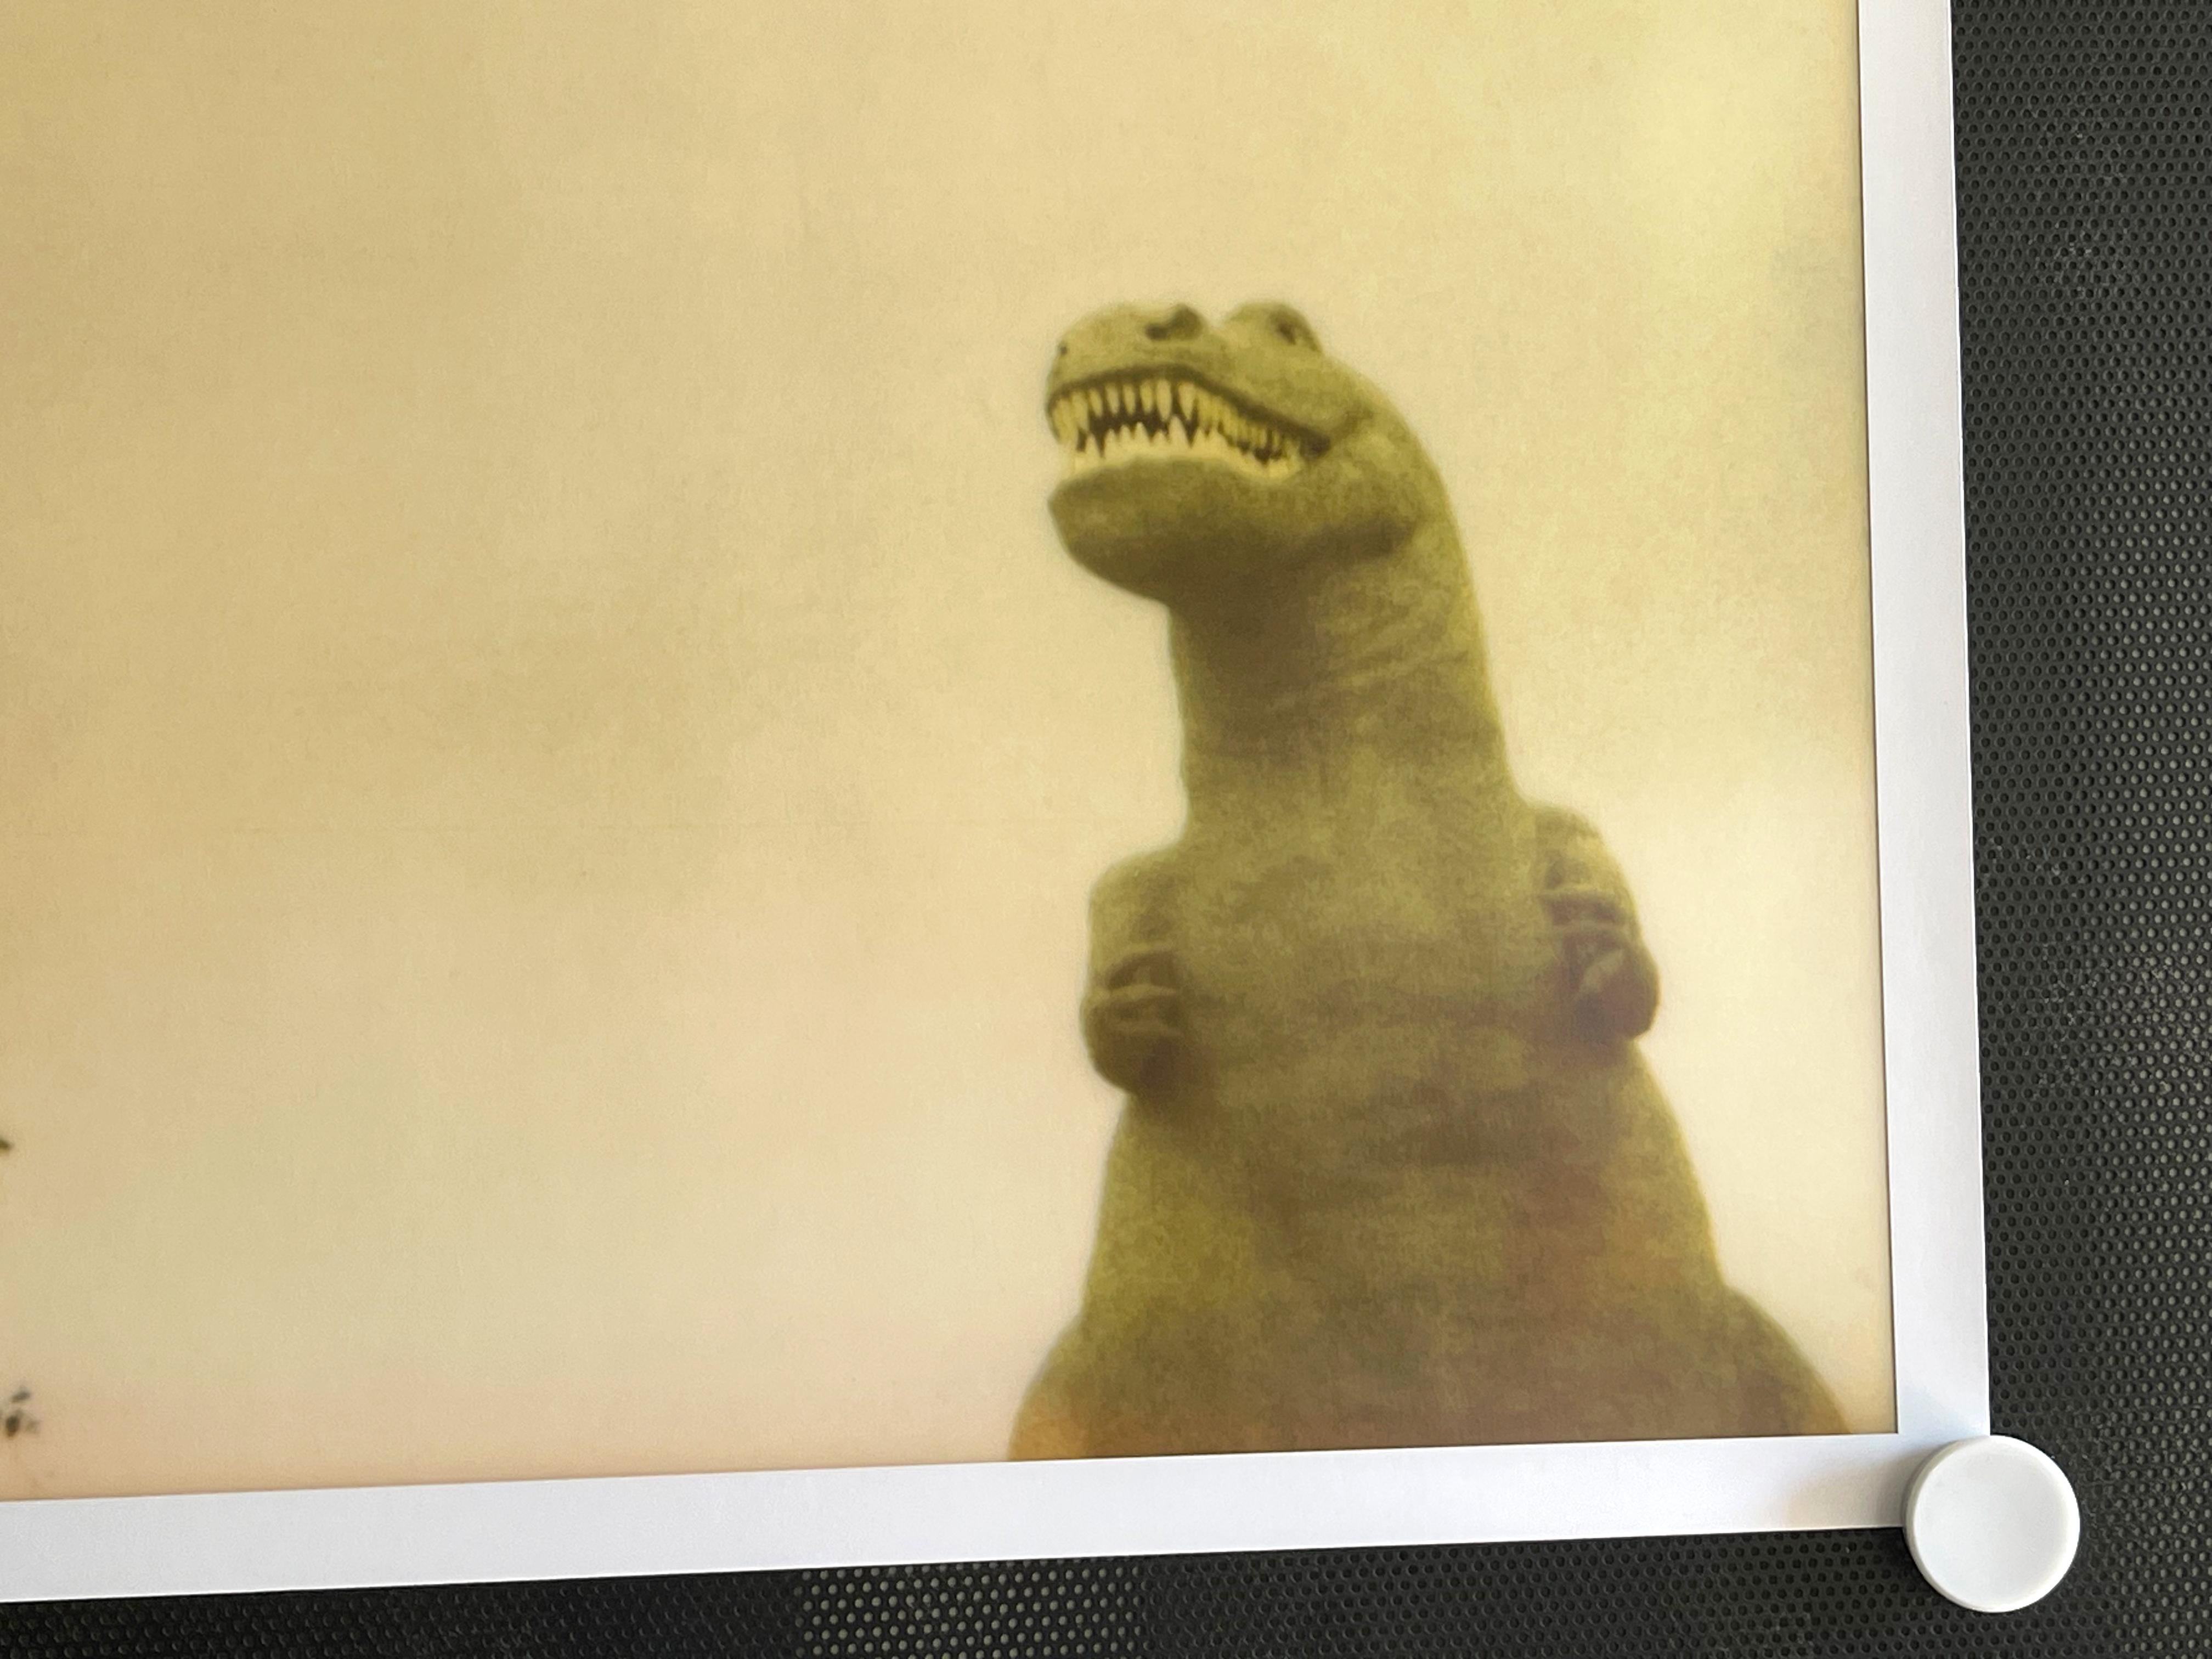 Cabazon Dinosaurs (Drive to the Desert) - 2000

44x59cm, 
Edition 5/5. 
A.I.C. C-Print analogique, basé sur le Polaroid. 
Label de certificat et de signature. 
Inventaire de l'artiste #155.05. 
Non monté. 

Stefanie Schneider vit et travaille dans